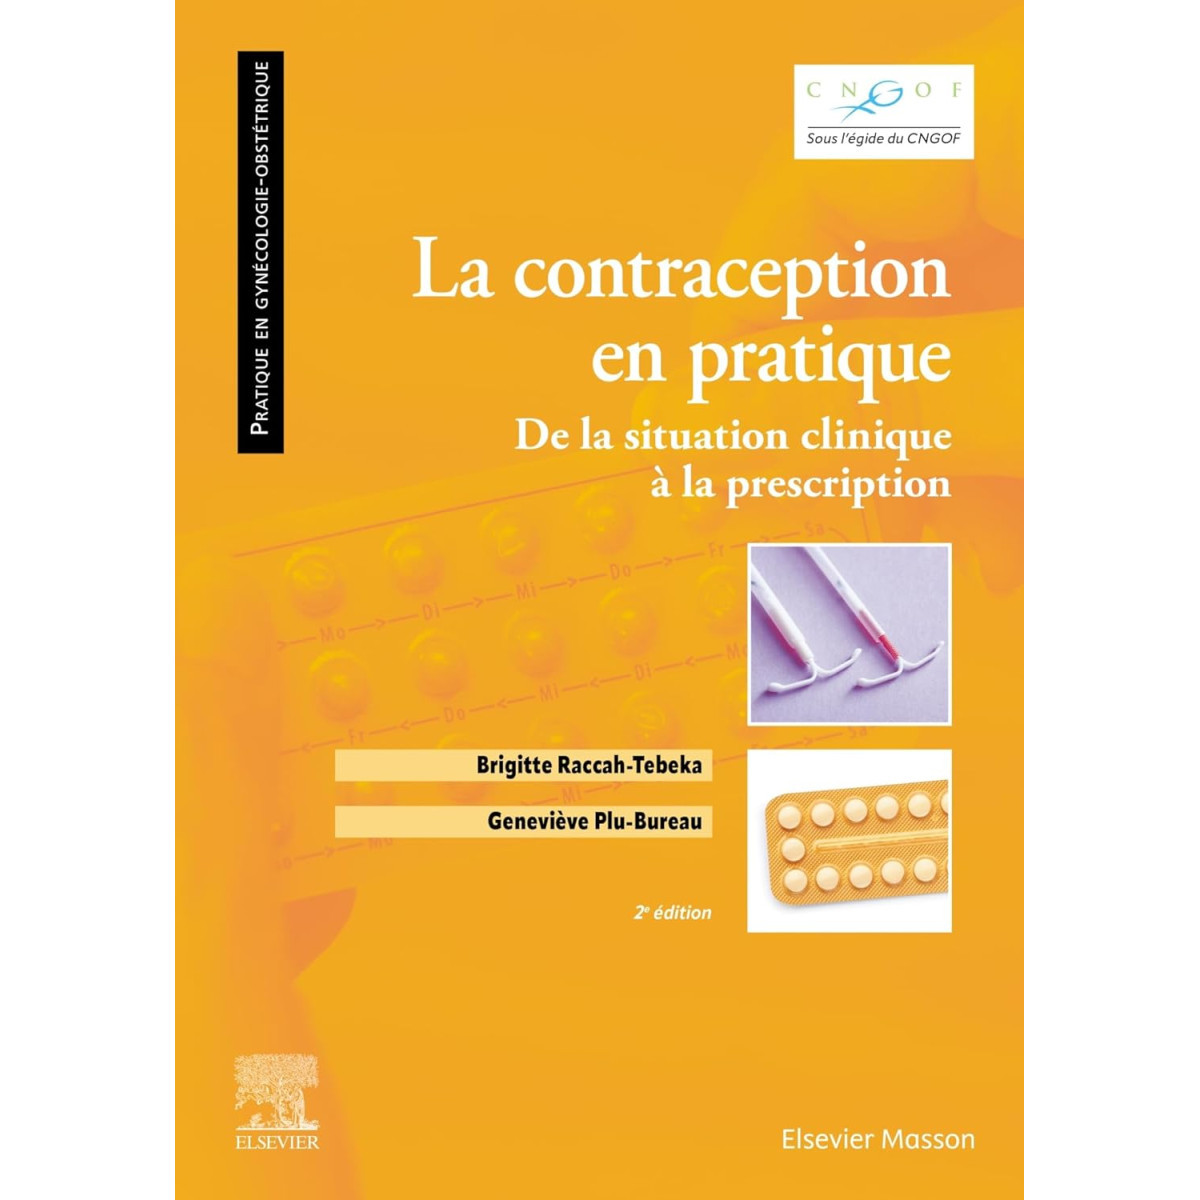 La contraception en pratique: De la situation clinique à la prescription